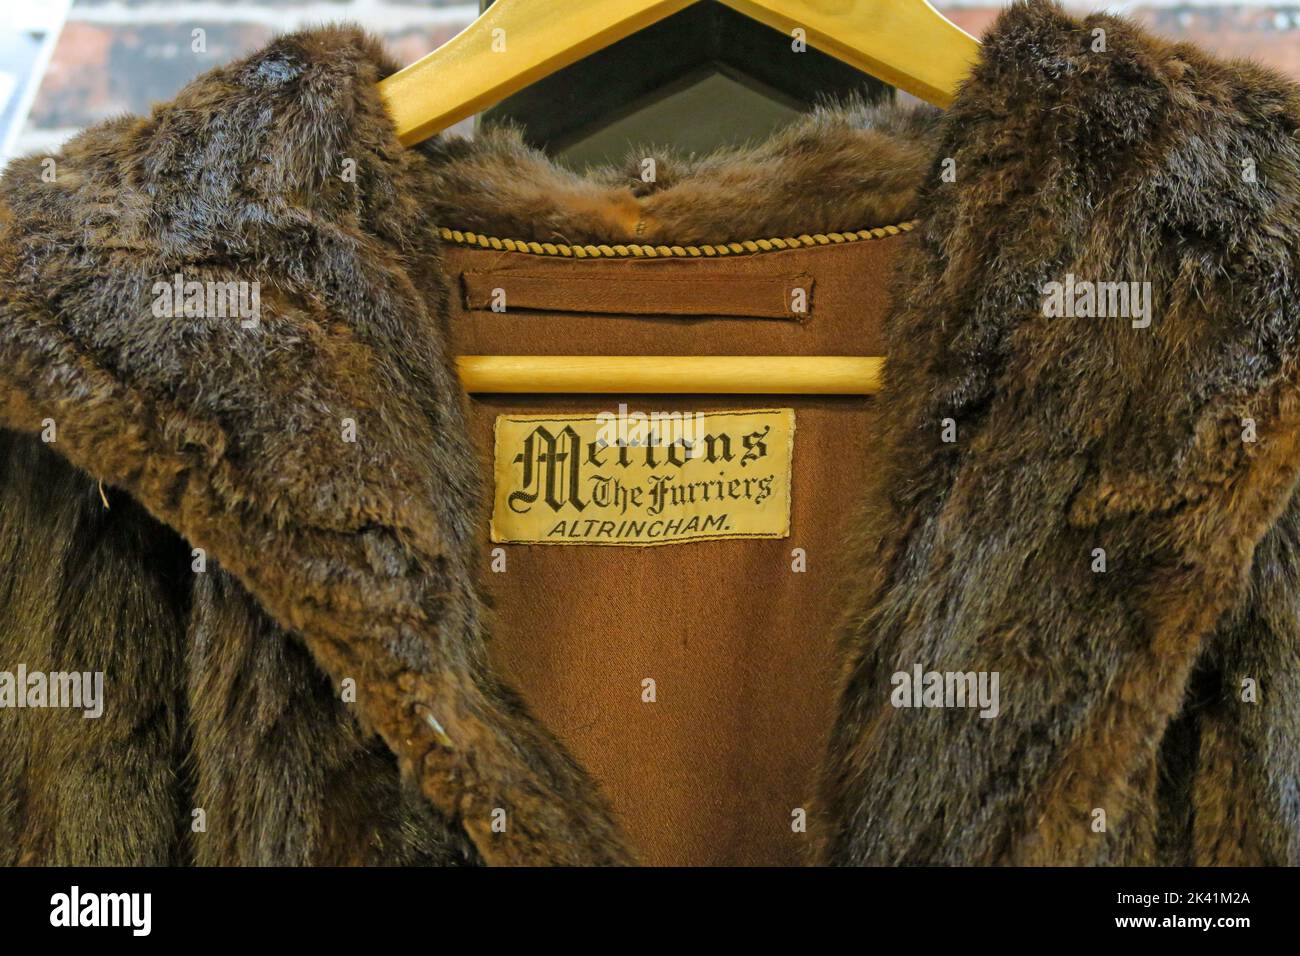 Mertons i pelliccieri, pelliccia, di Altrincham, Trafford, Greater Manchester, Inghilterra, Regno Unito, Foto Stock